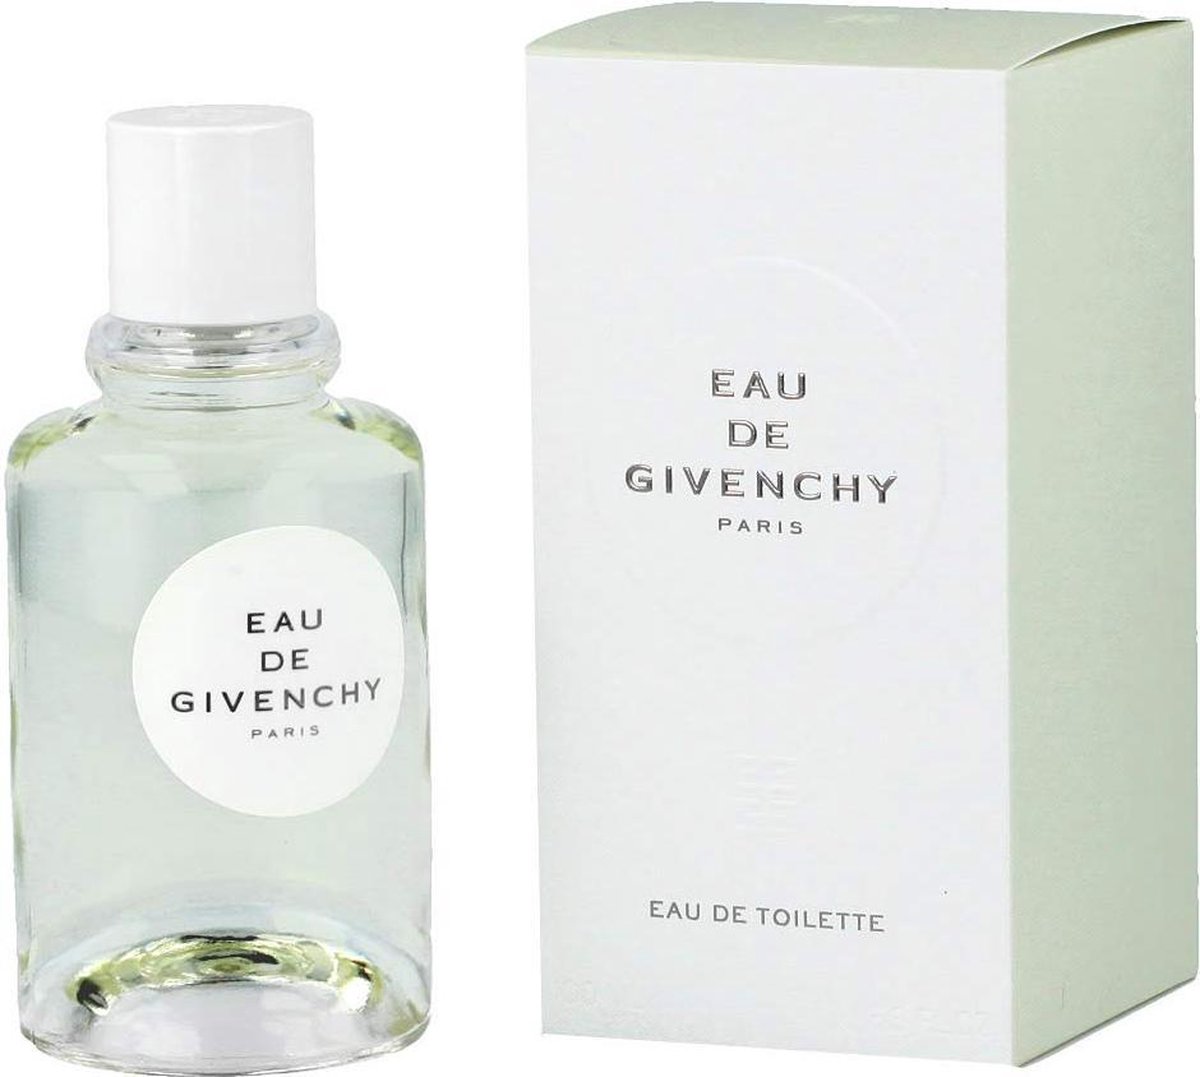 EAU DE GIVENCHY by Givenchy 100 ml - Eau De Toilette Spray